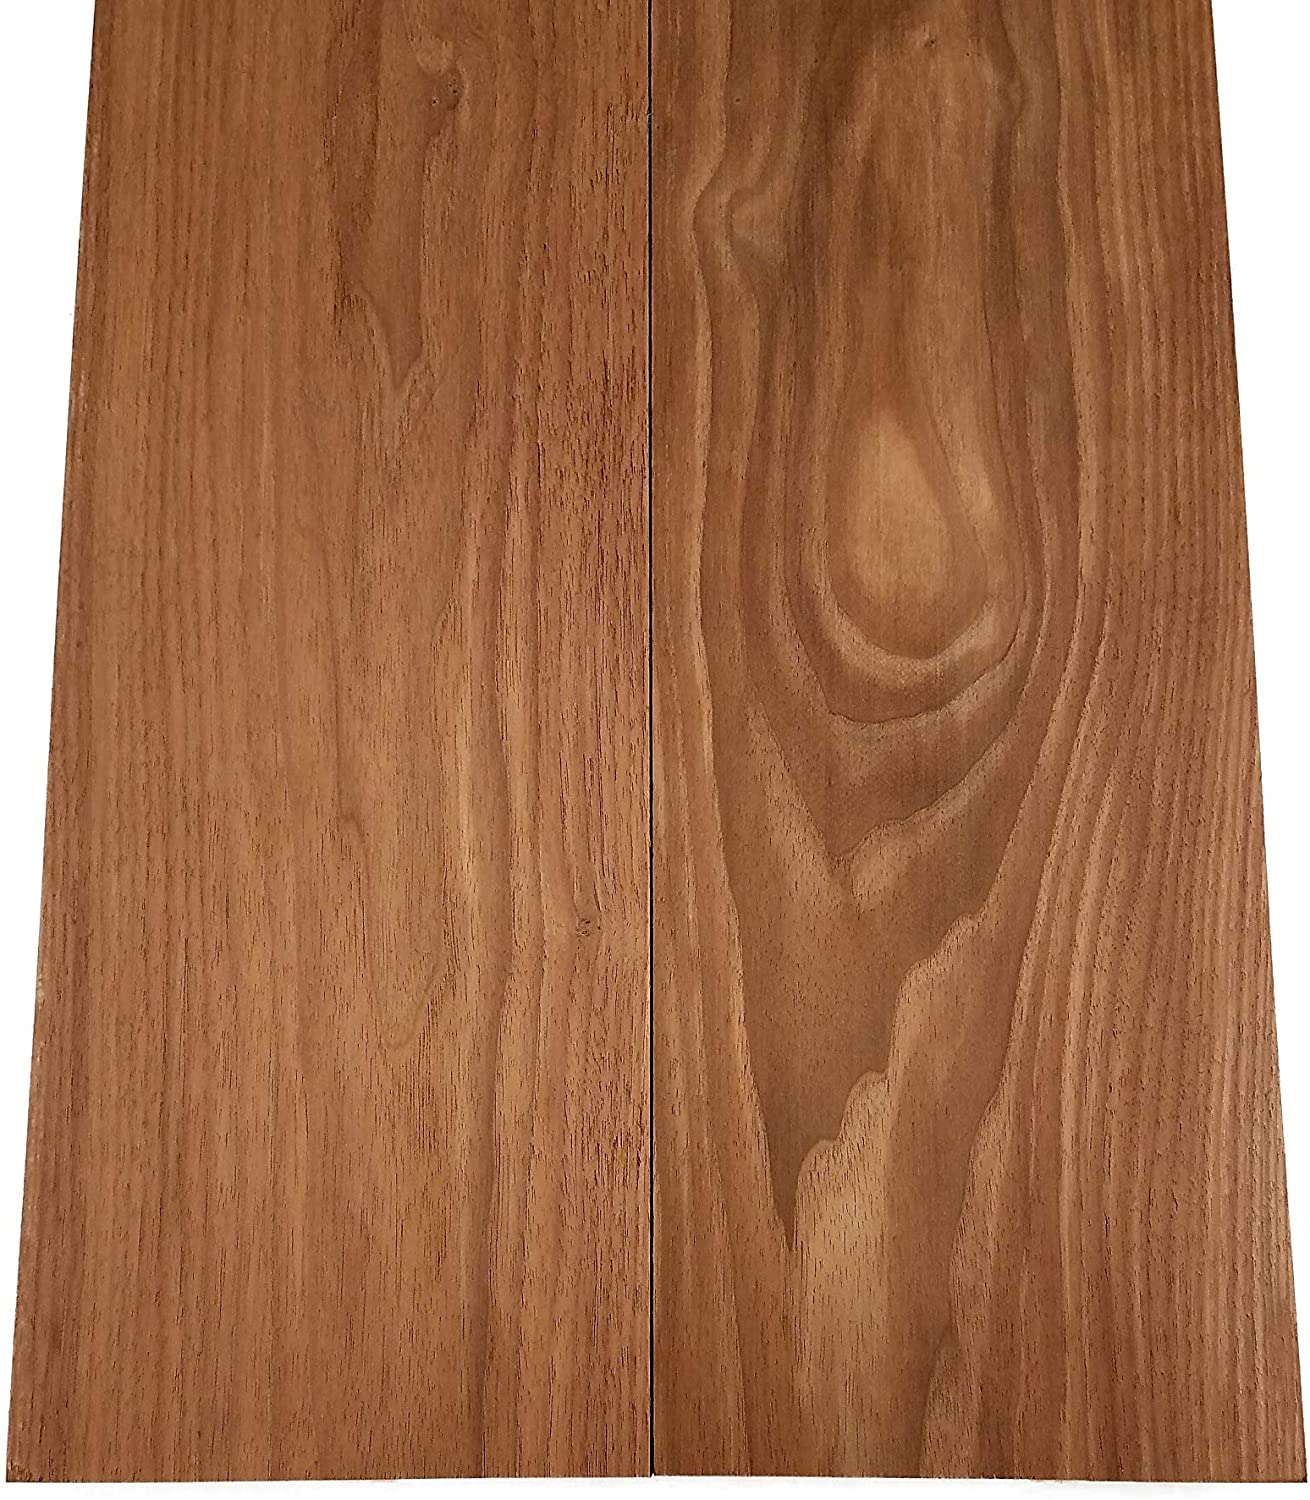 Walnut Lumber Board - 1 3/4" x 5"